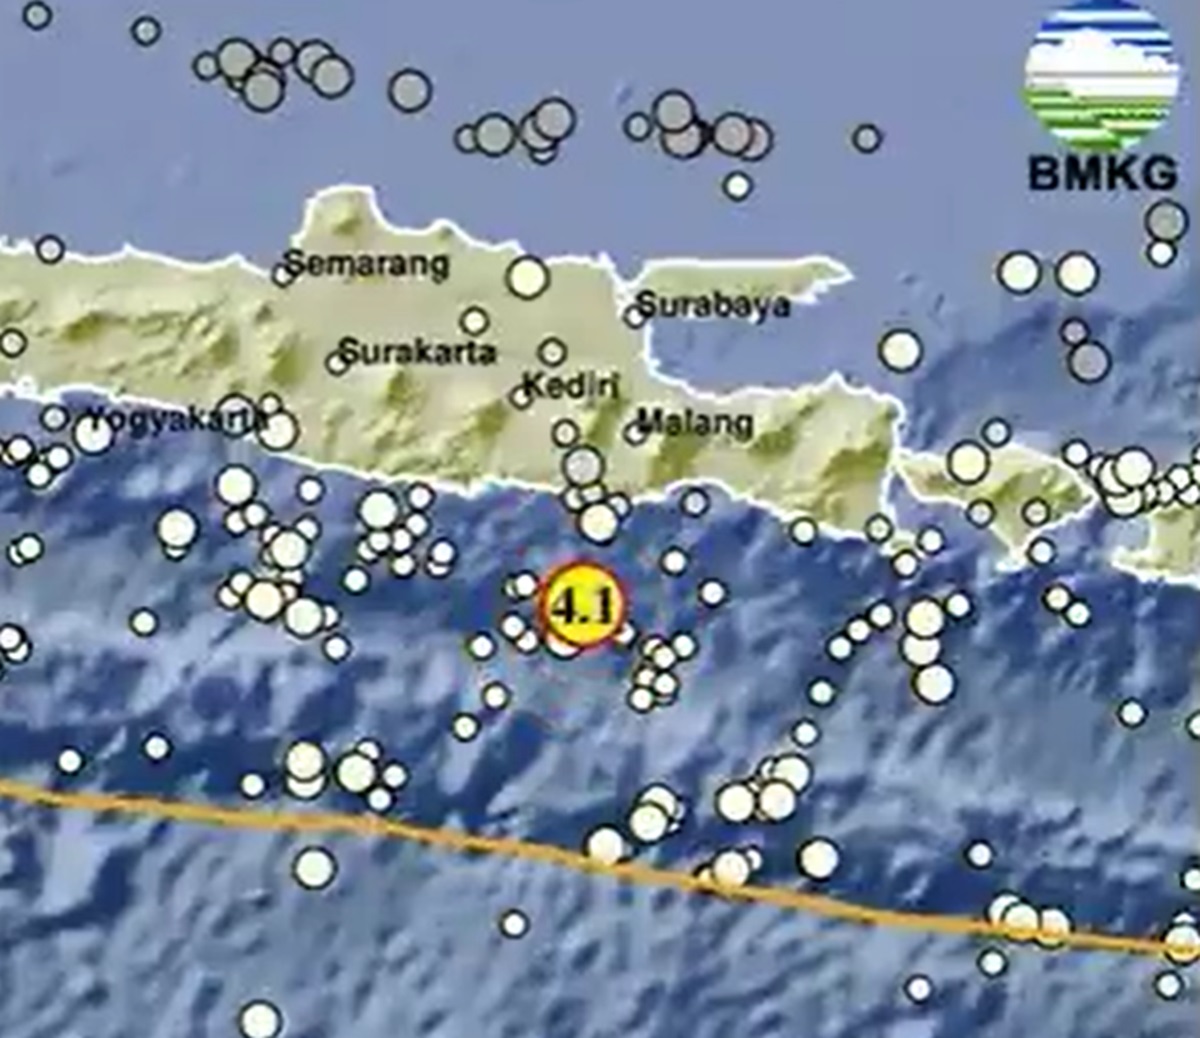 Waduh, Gempa Berkekuatan M 4.1 Guncang Malang Jawa Timur